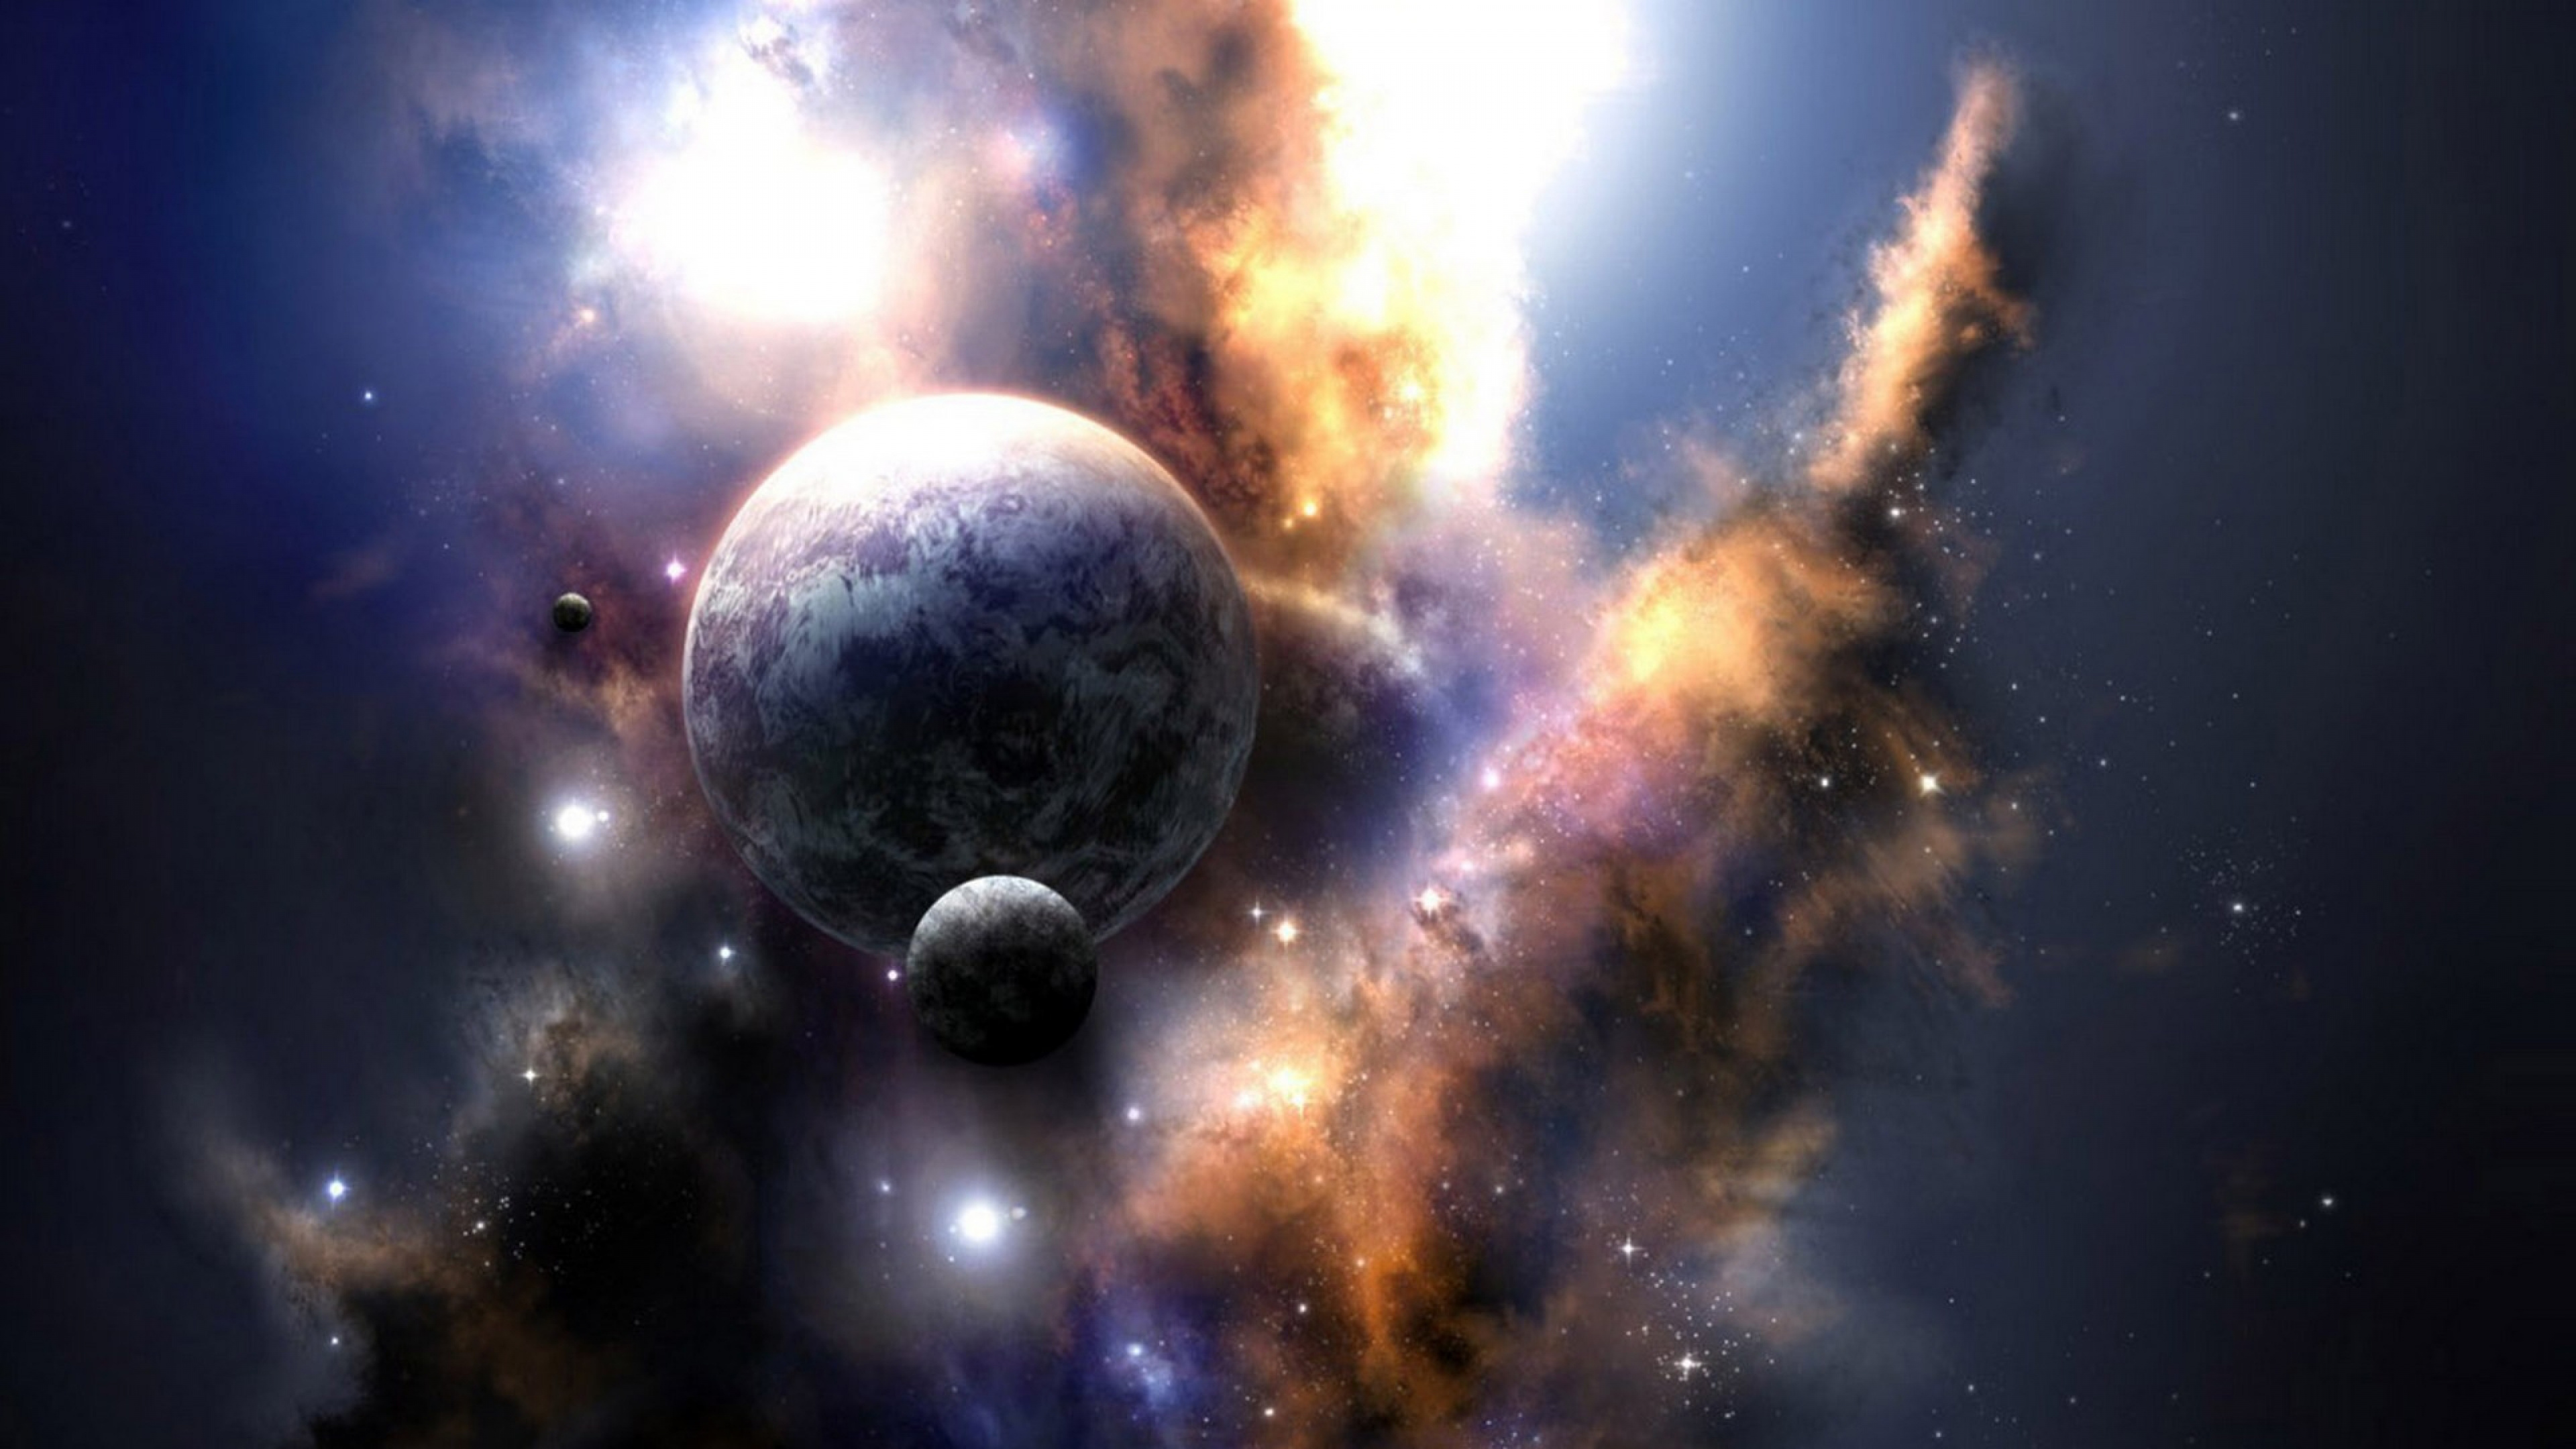 Universo, el Espacio Exterior, Objeto Astronómico, Ambiente, Espacio. Wallpaper in 3840x2160 Resolution